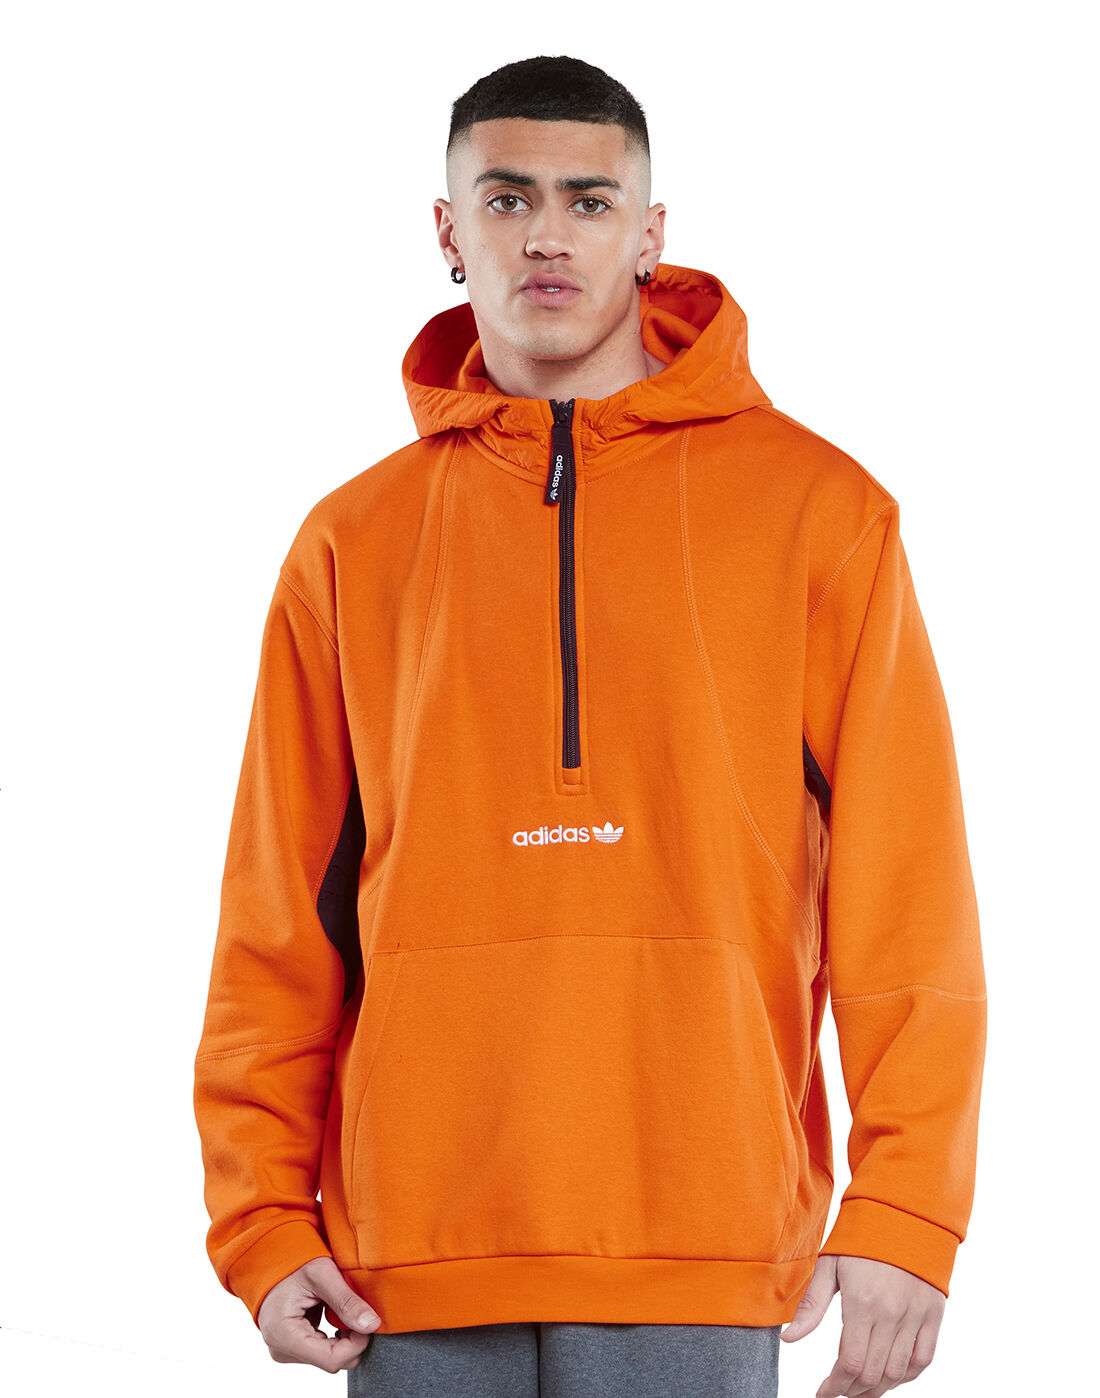 orange and black adidas hoodie